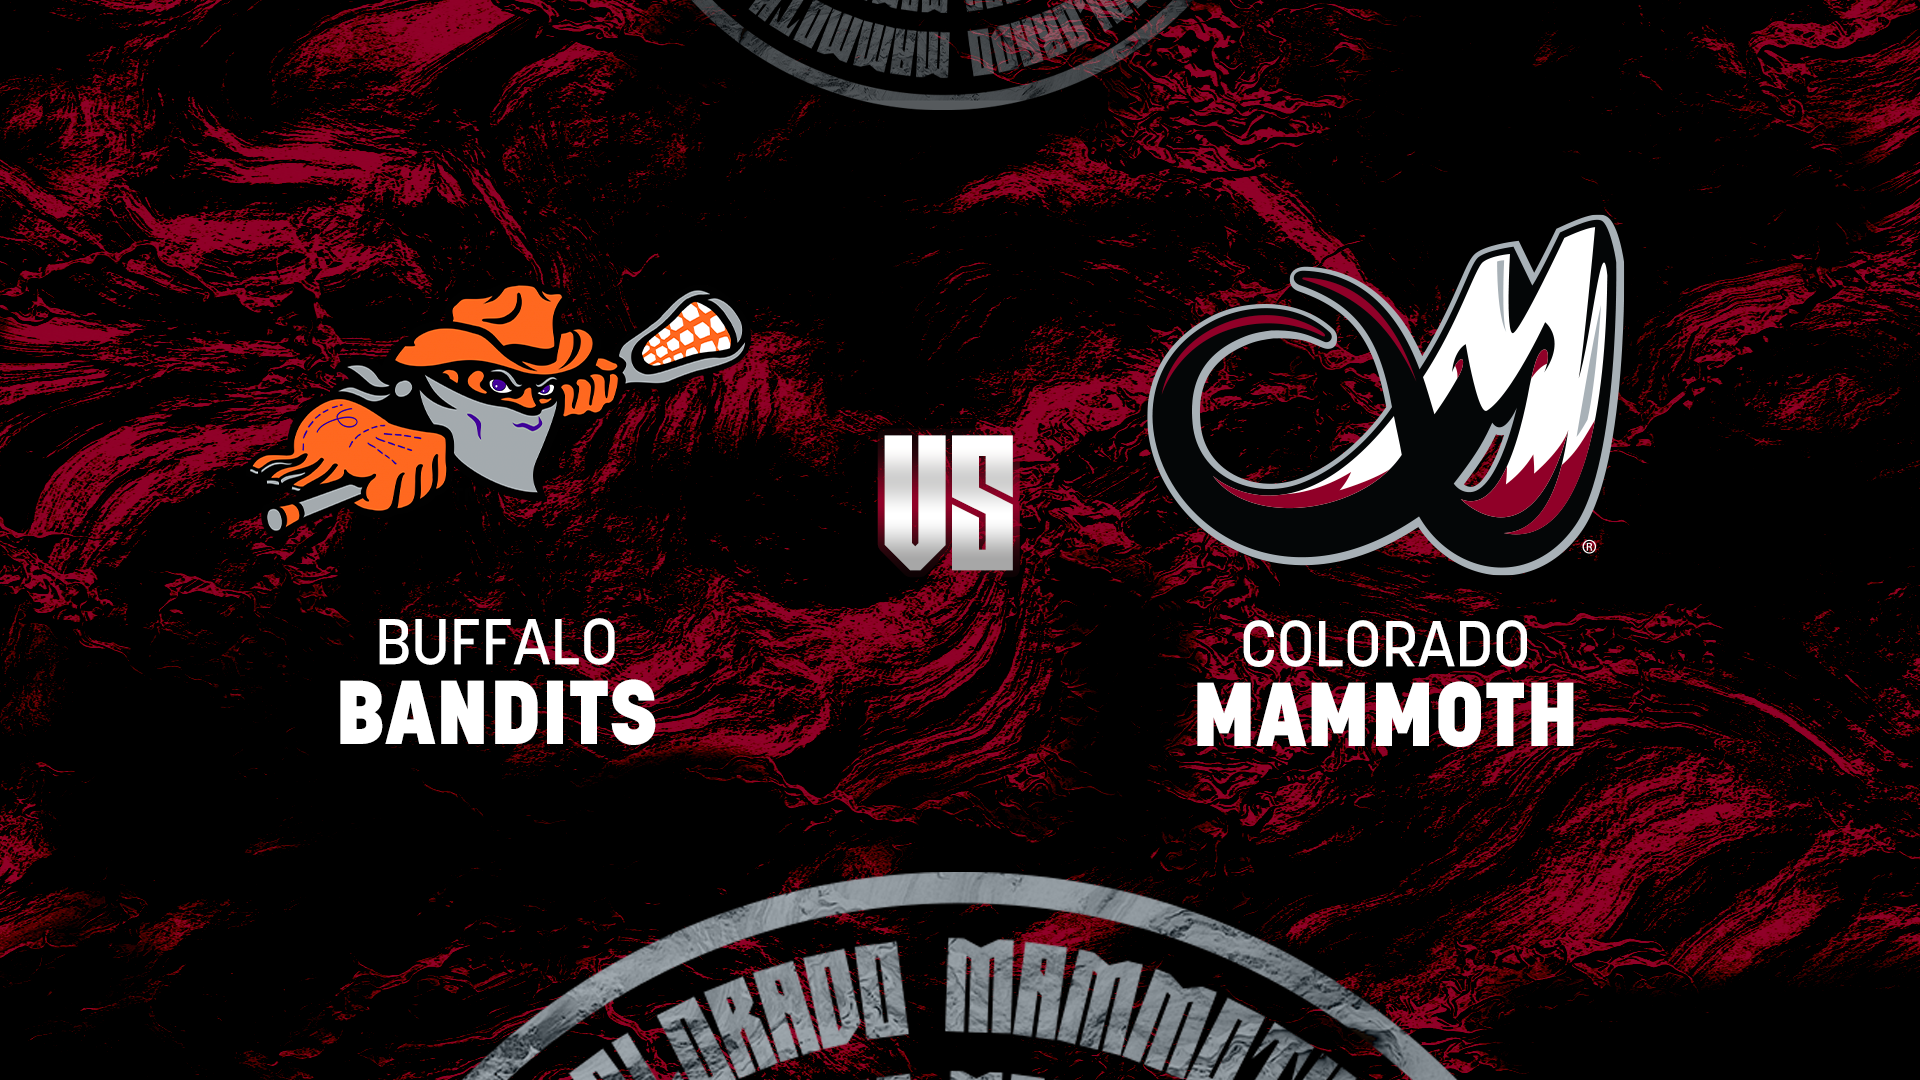 Bandits vs. Mammoth matchup graphic